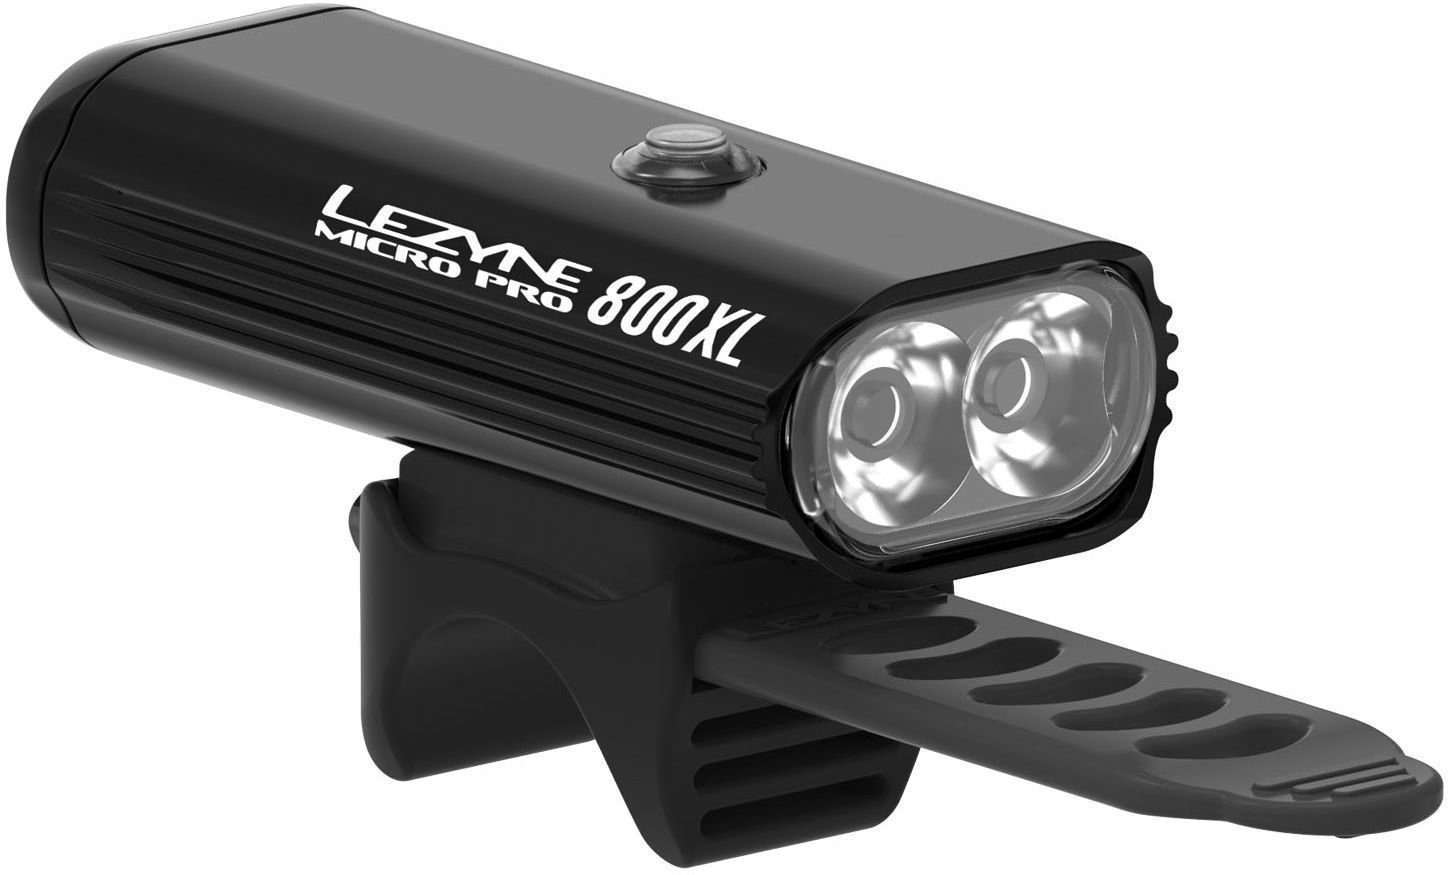 Cycling light Lezyne Micro Drive Pro 800 lm Black/Hi Gloss Cycling light